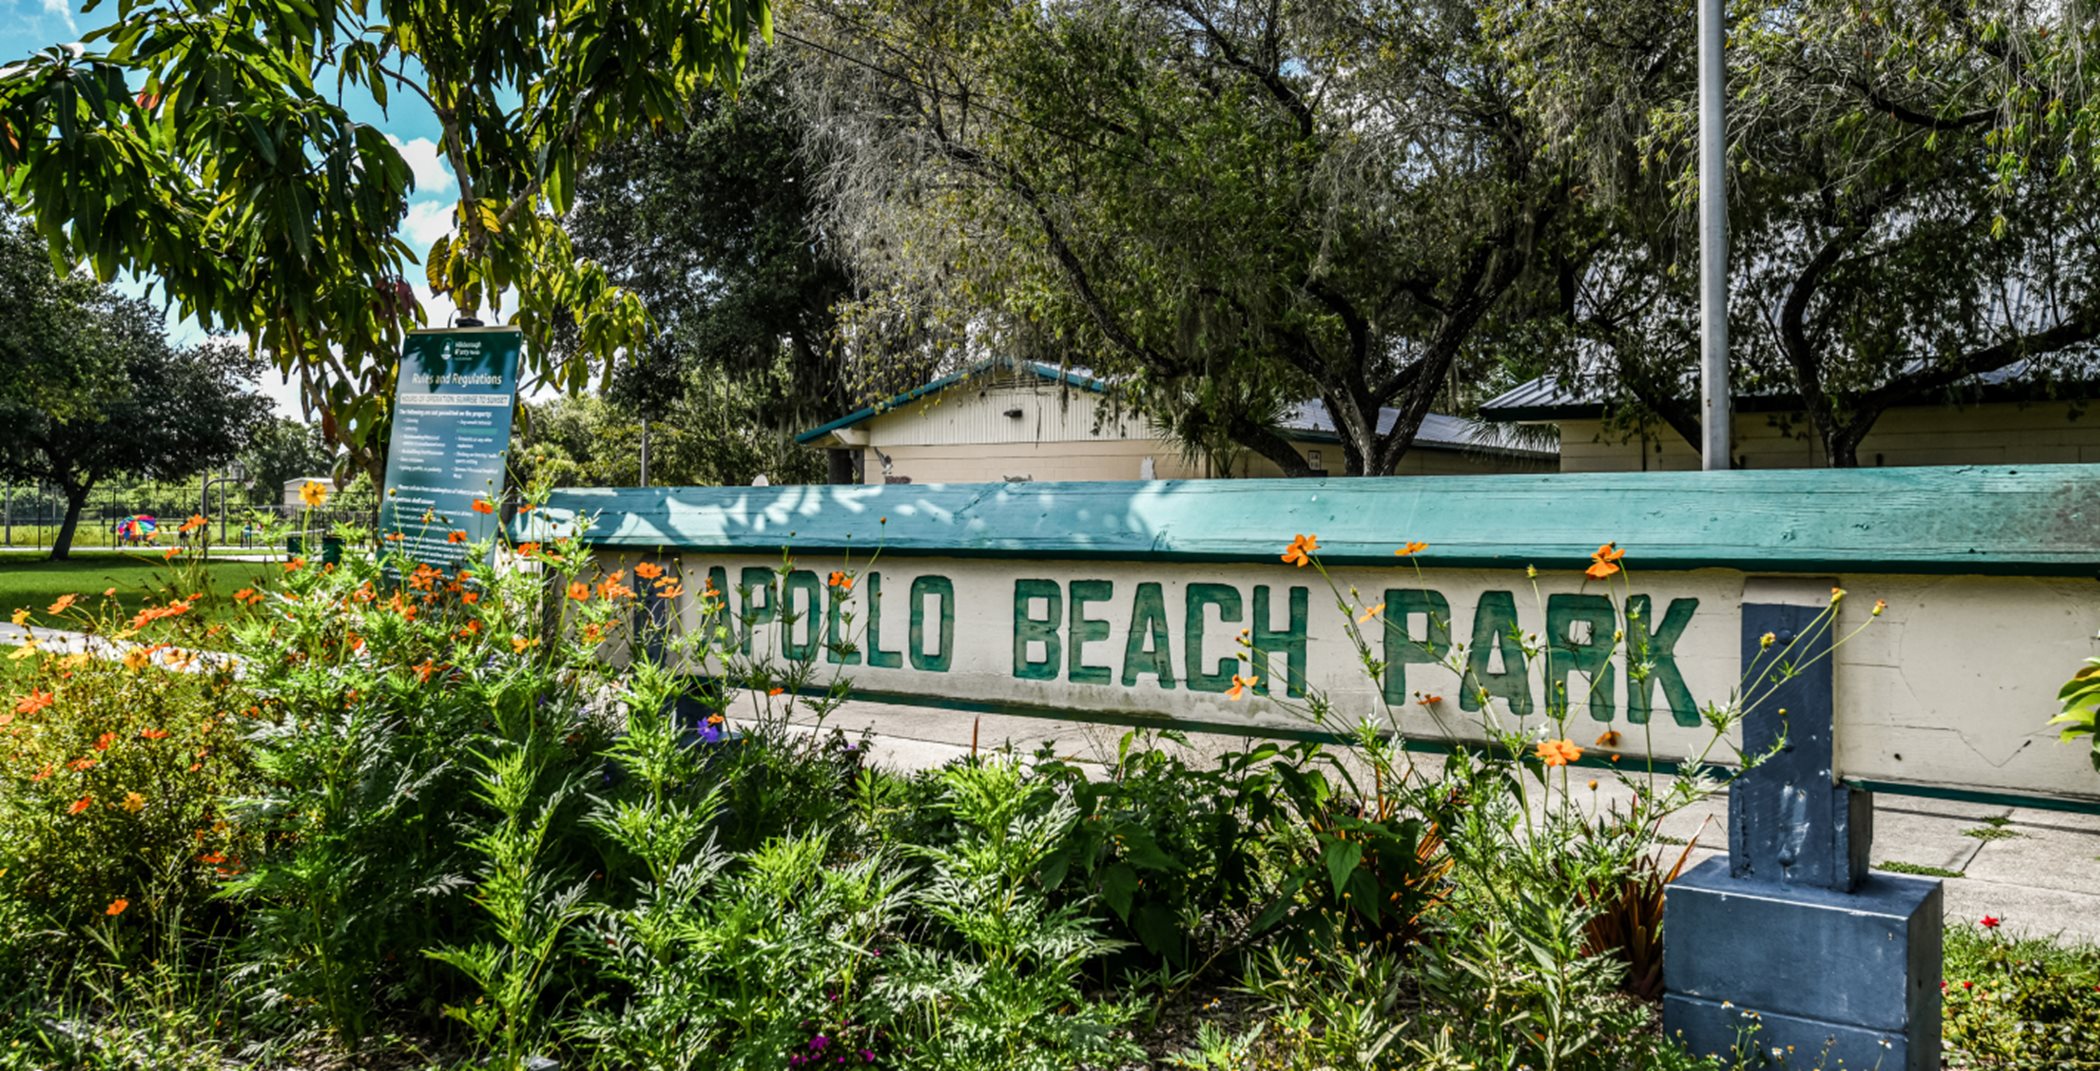 Apollo Beach Park